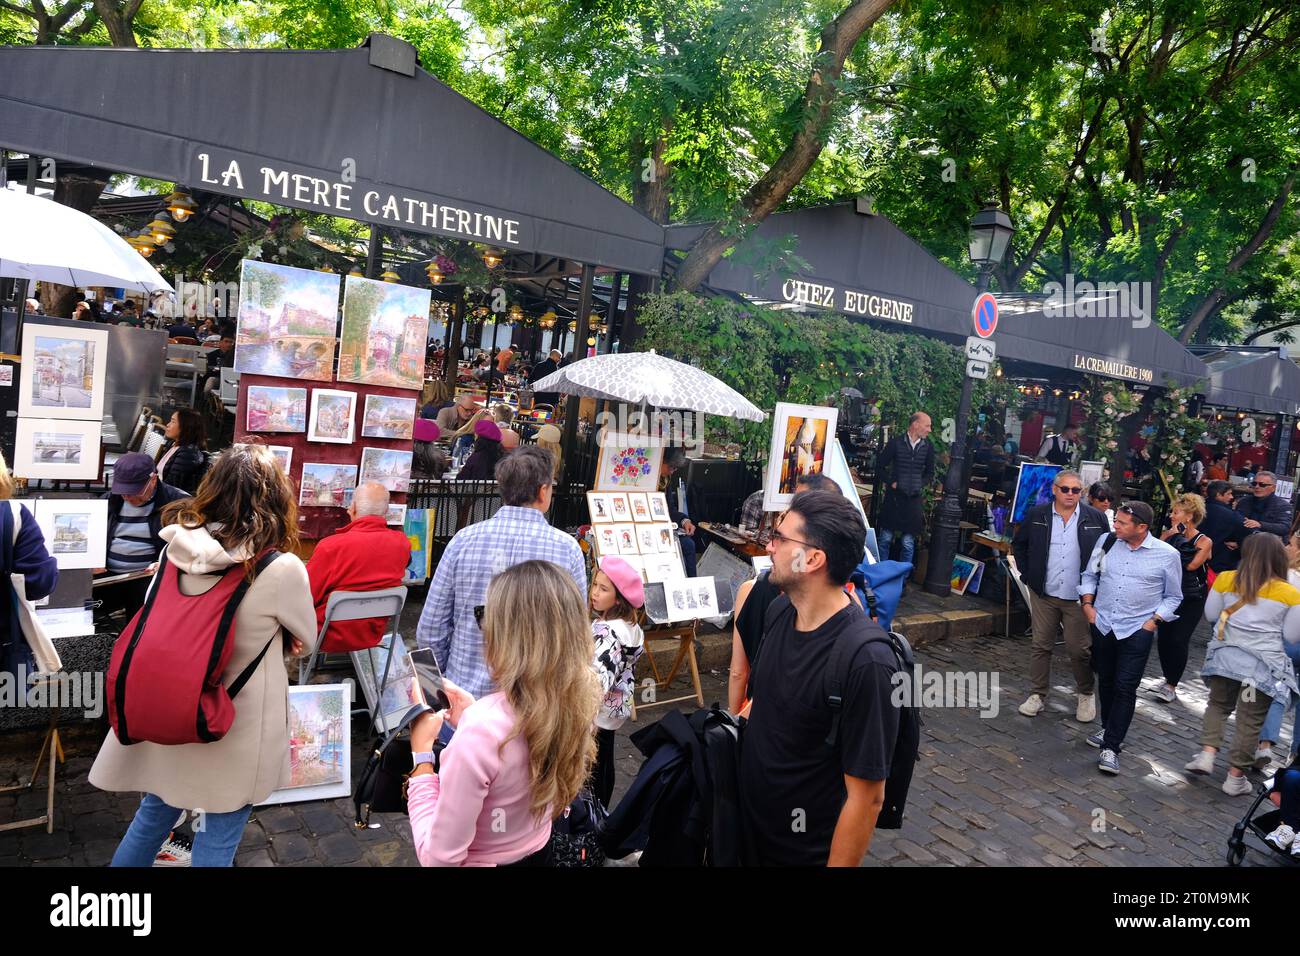 Touristes inspectant des œuvres d'art de divers artistes sur la place Tertre dans le quartier de Montmartre à Paris Banque D'Images